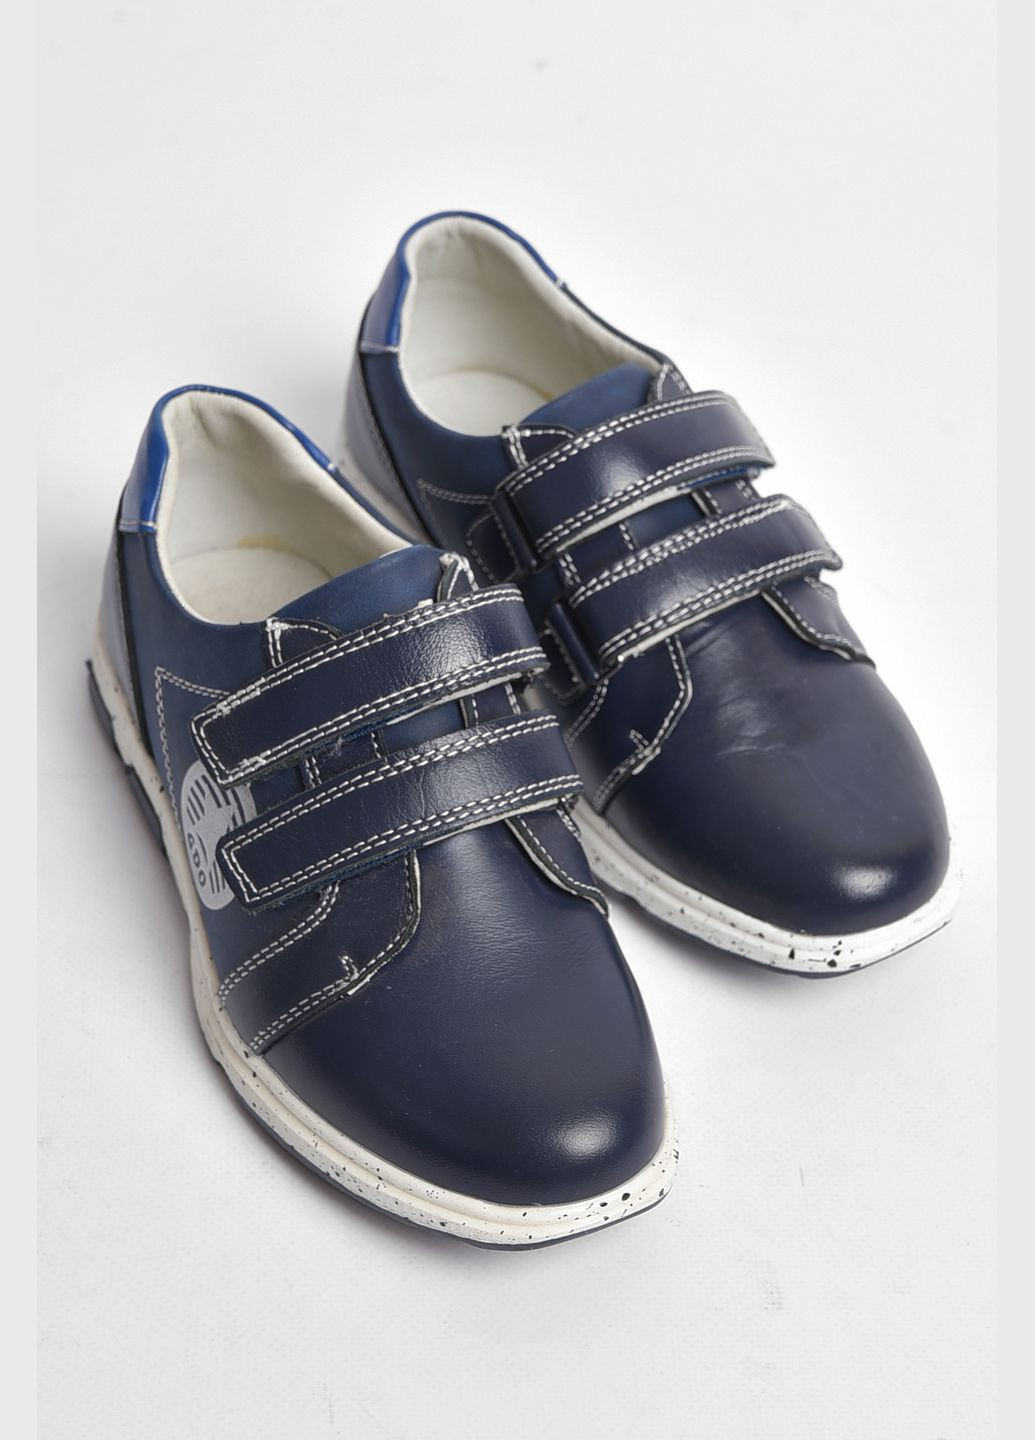 Темно-синие демисезонные кроссовки детские для мальчика темно-синего цвета Let's Shop